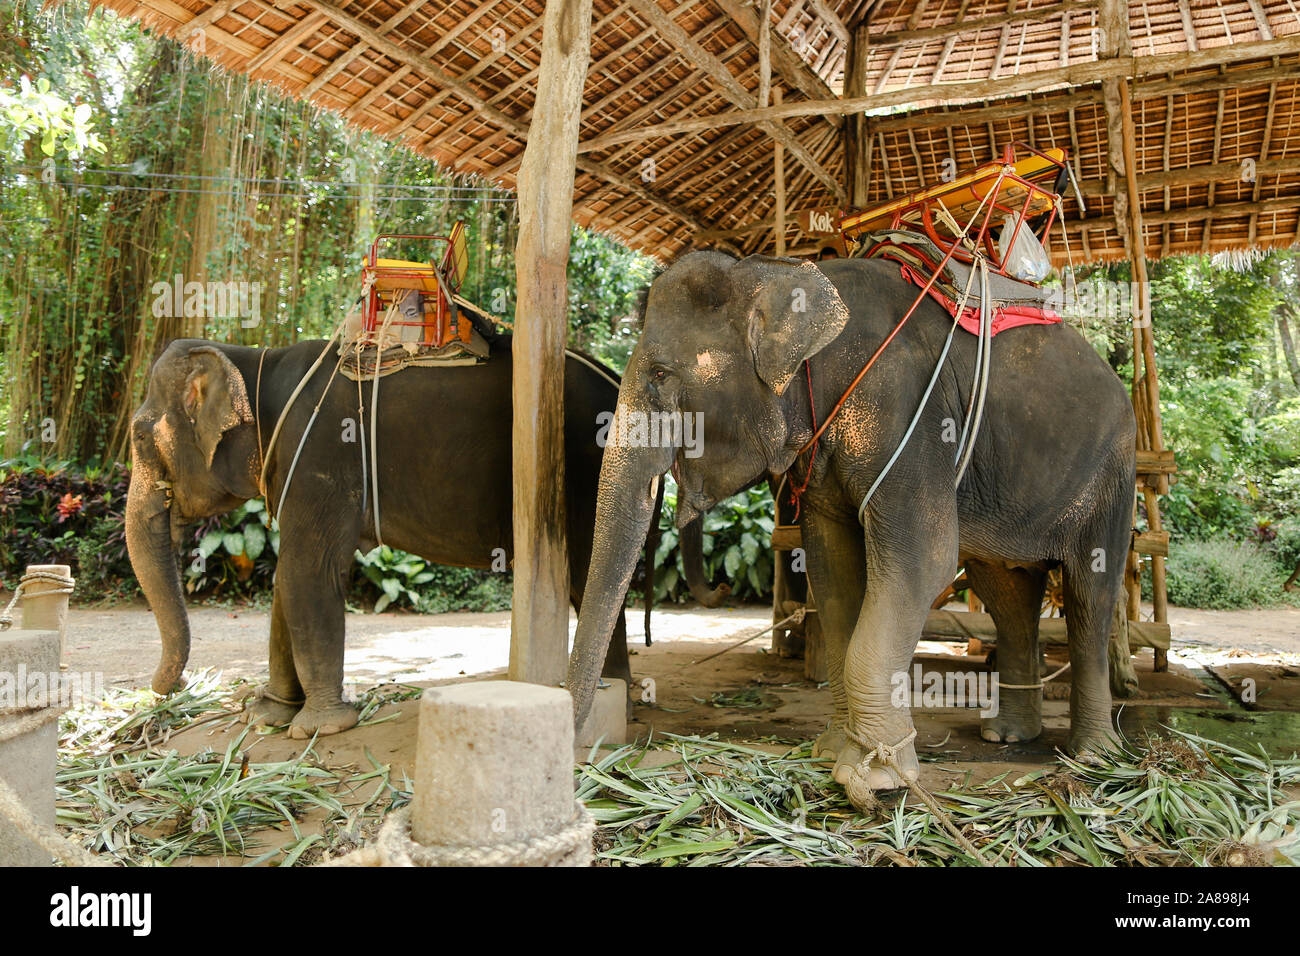 Elefanten mit Reiter Sattel in Thailand Stockfotografie - Alamy